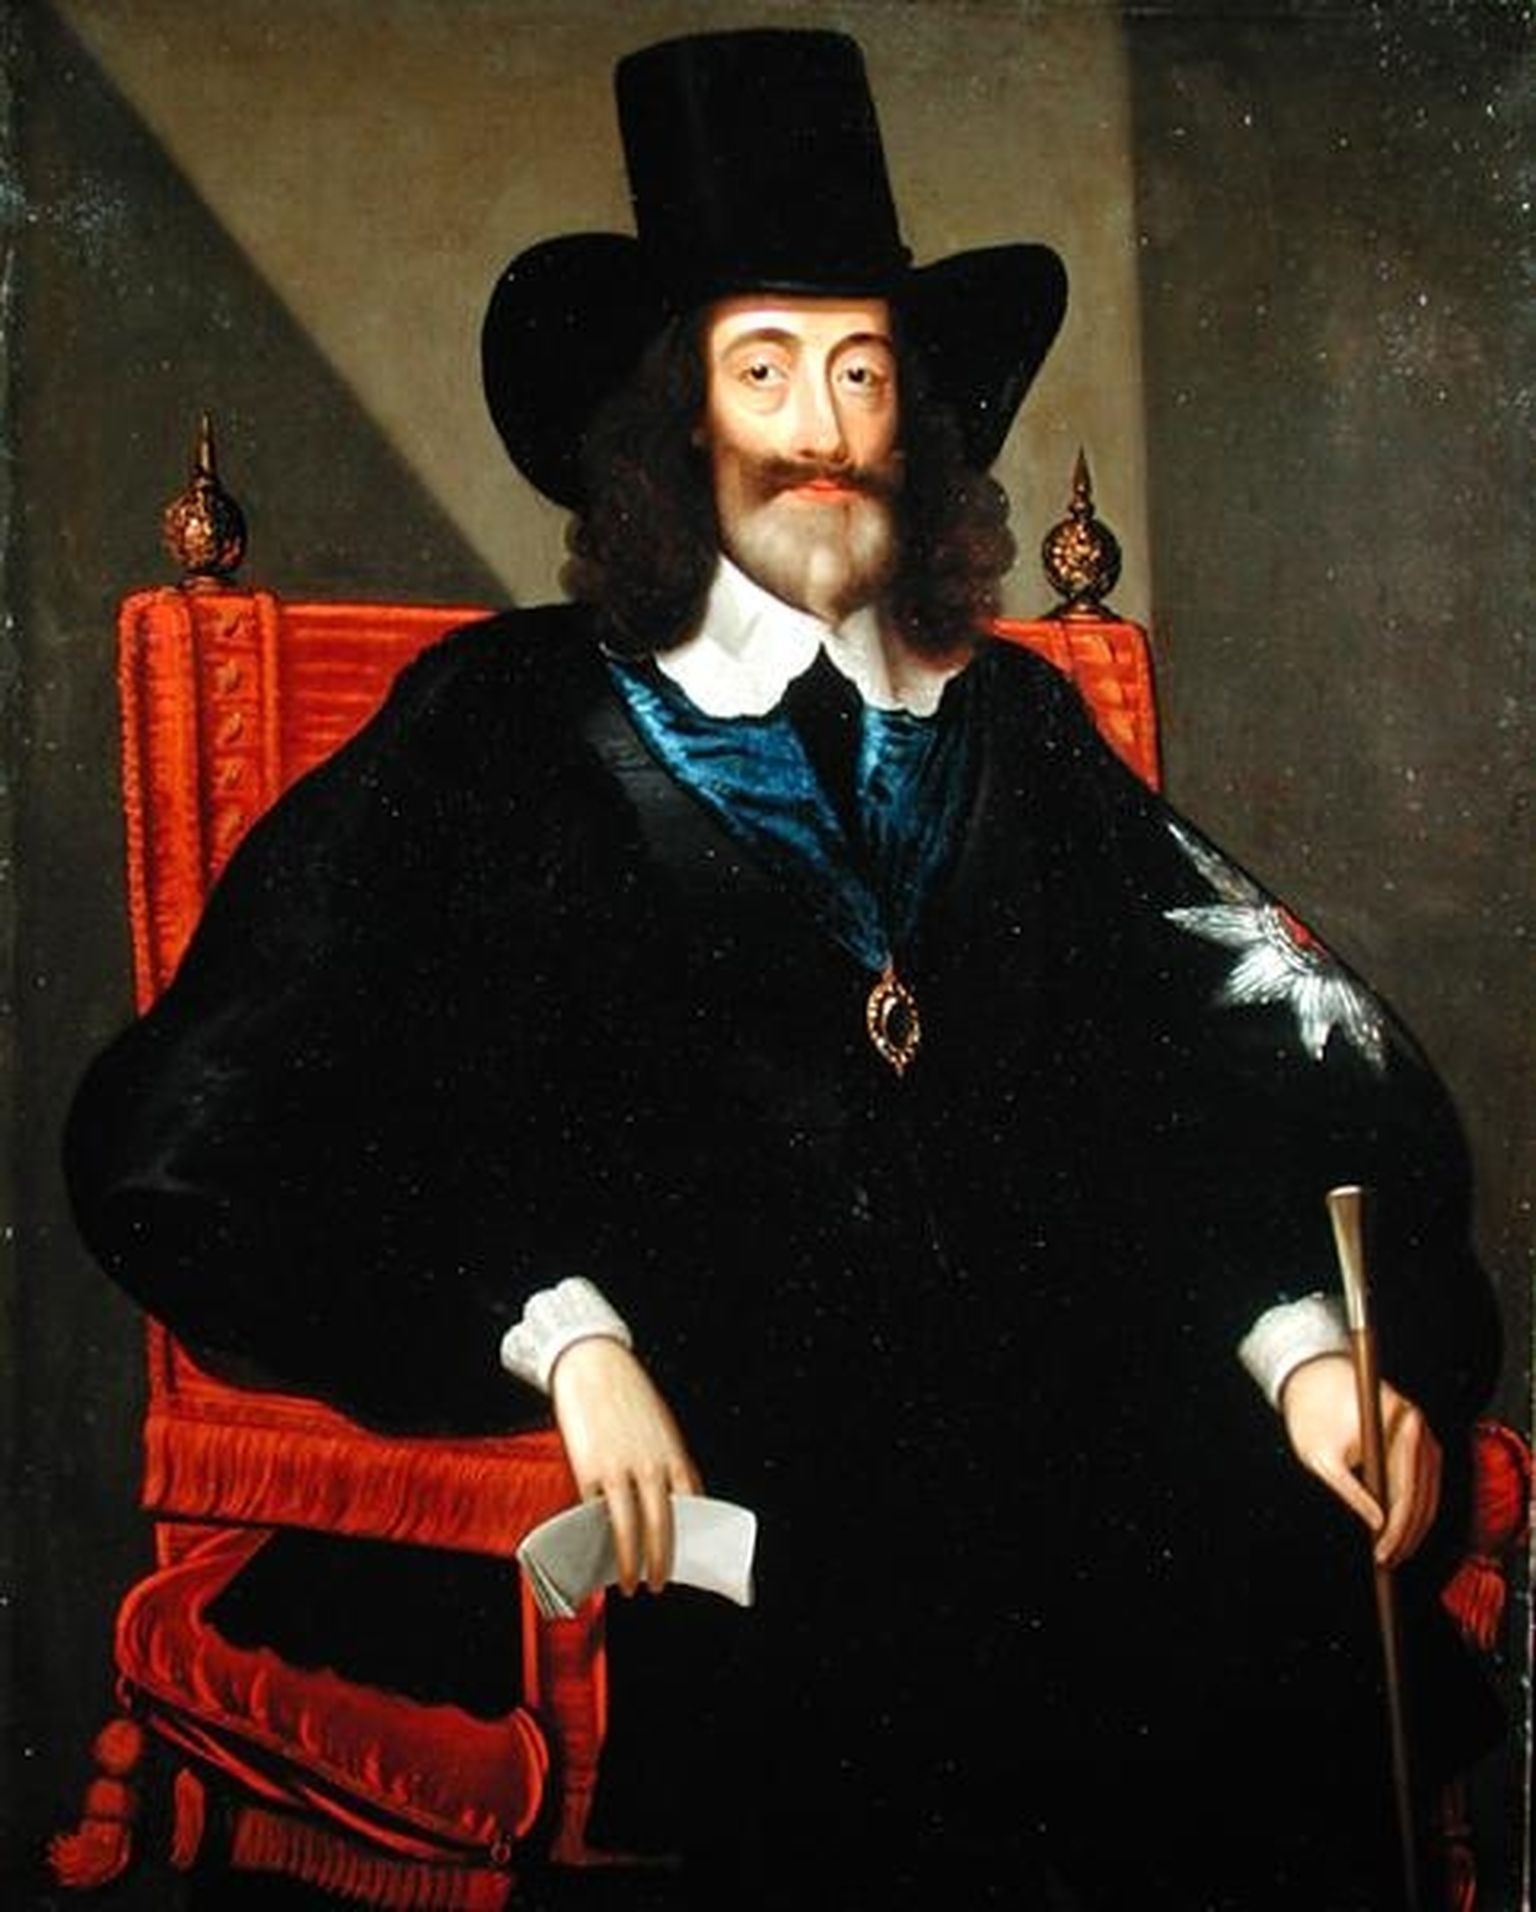 Kohtuprotsessi ajal lasi Charles I oma juustel ja habemel protesti märgiks pikaks kasvada